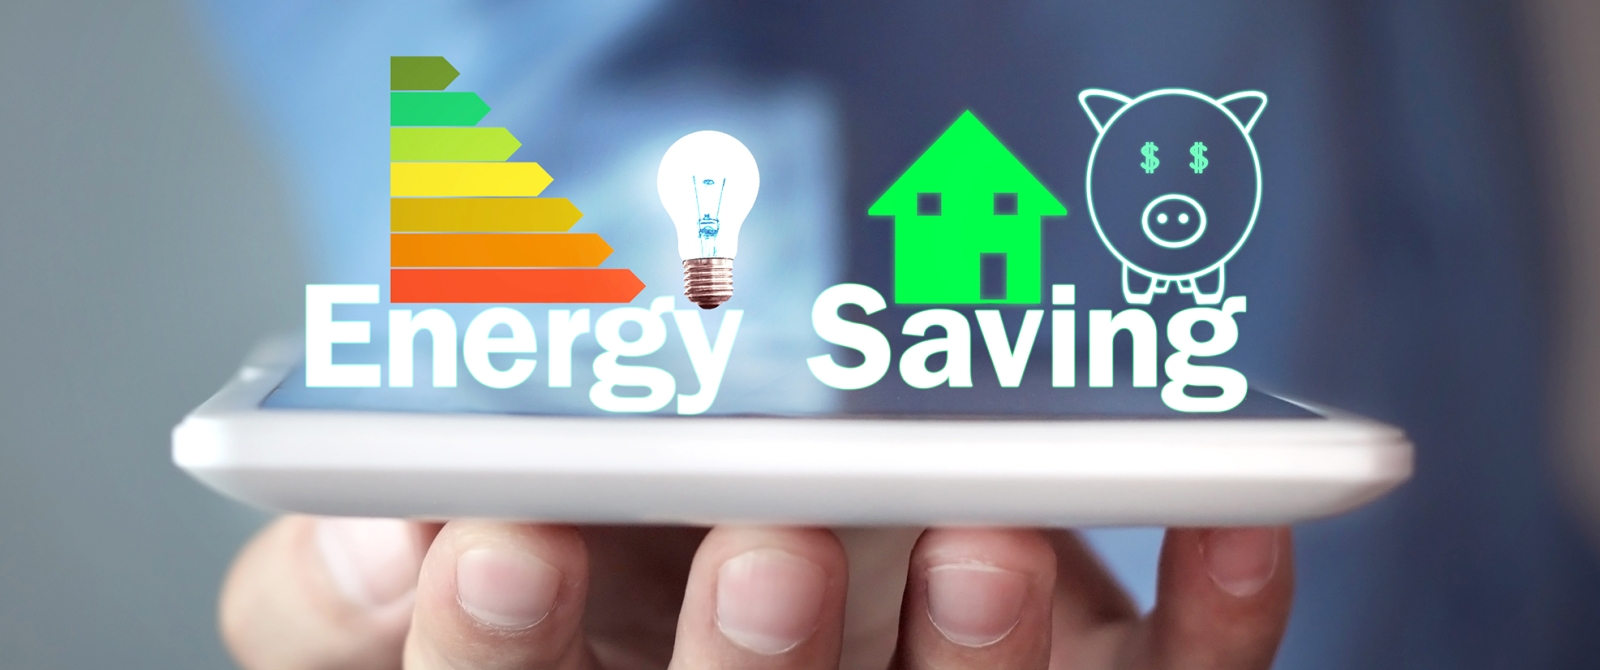 Energy efficiency graphic